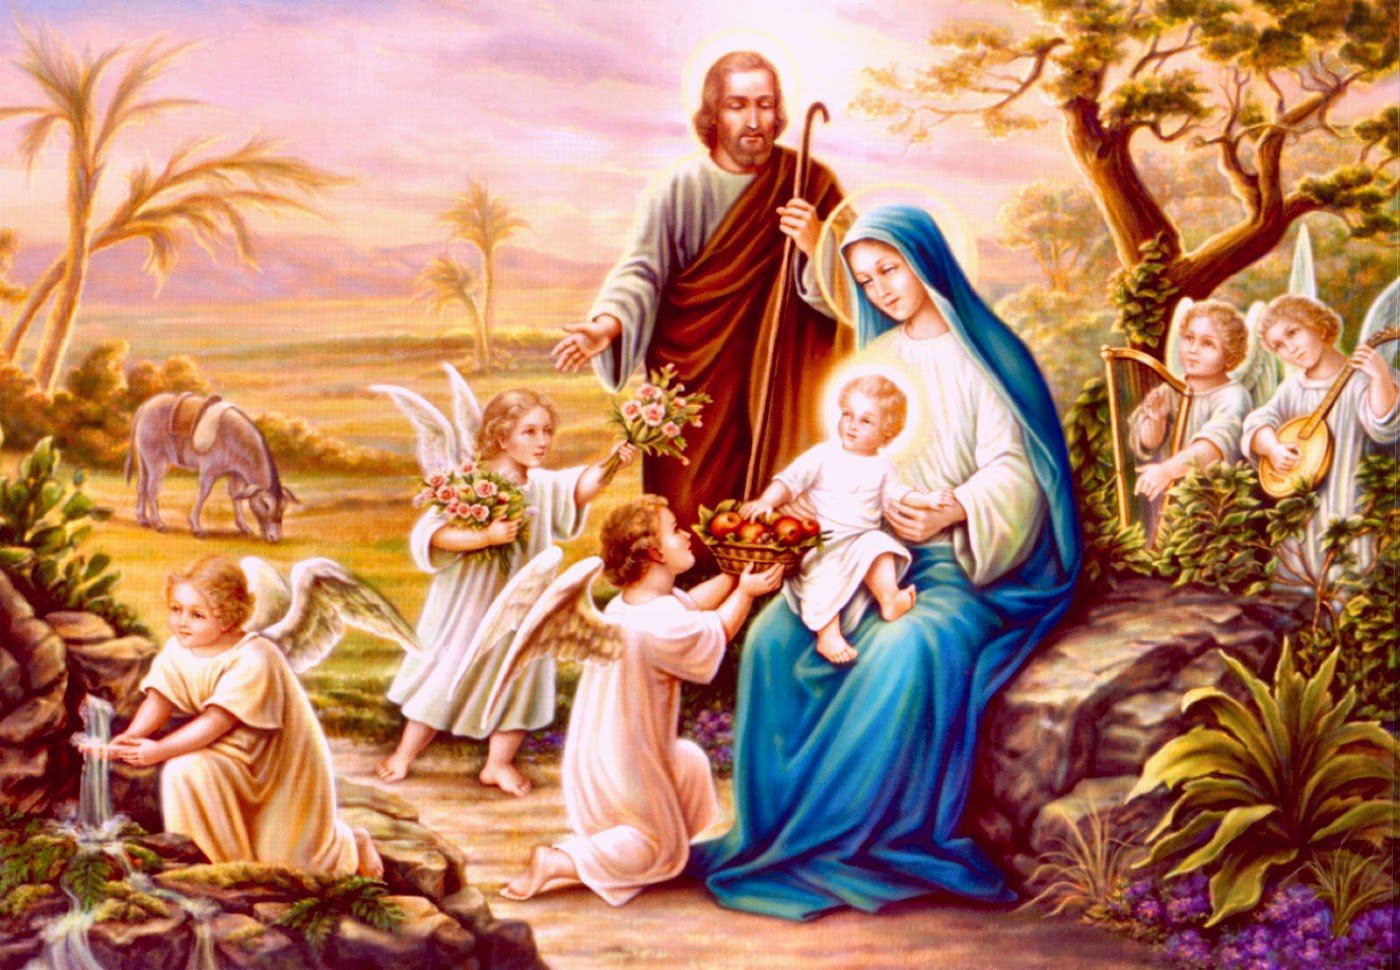 Hình ảnh Đức Mẹ Đồng trinh và Chúa Hài đồng đẹp nhất trong tranh